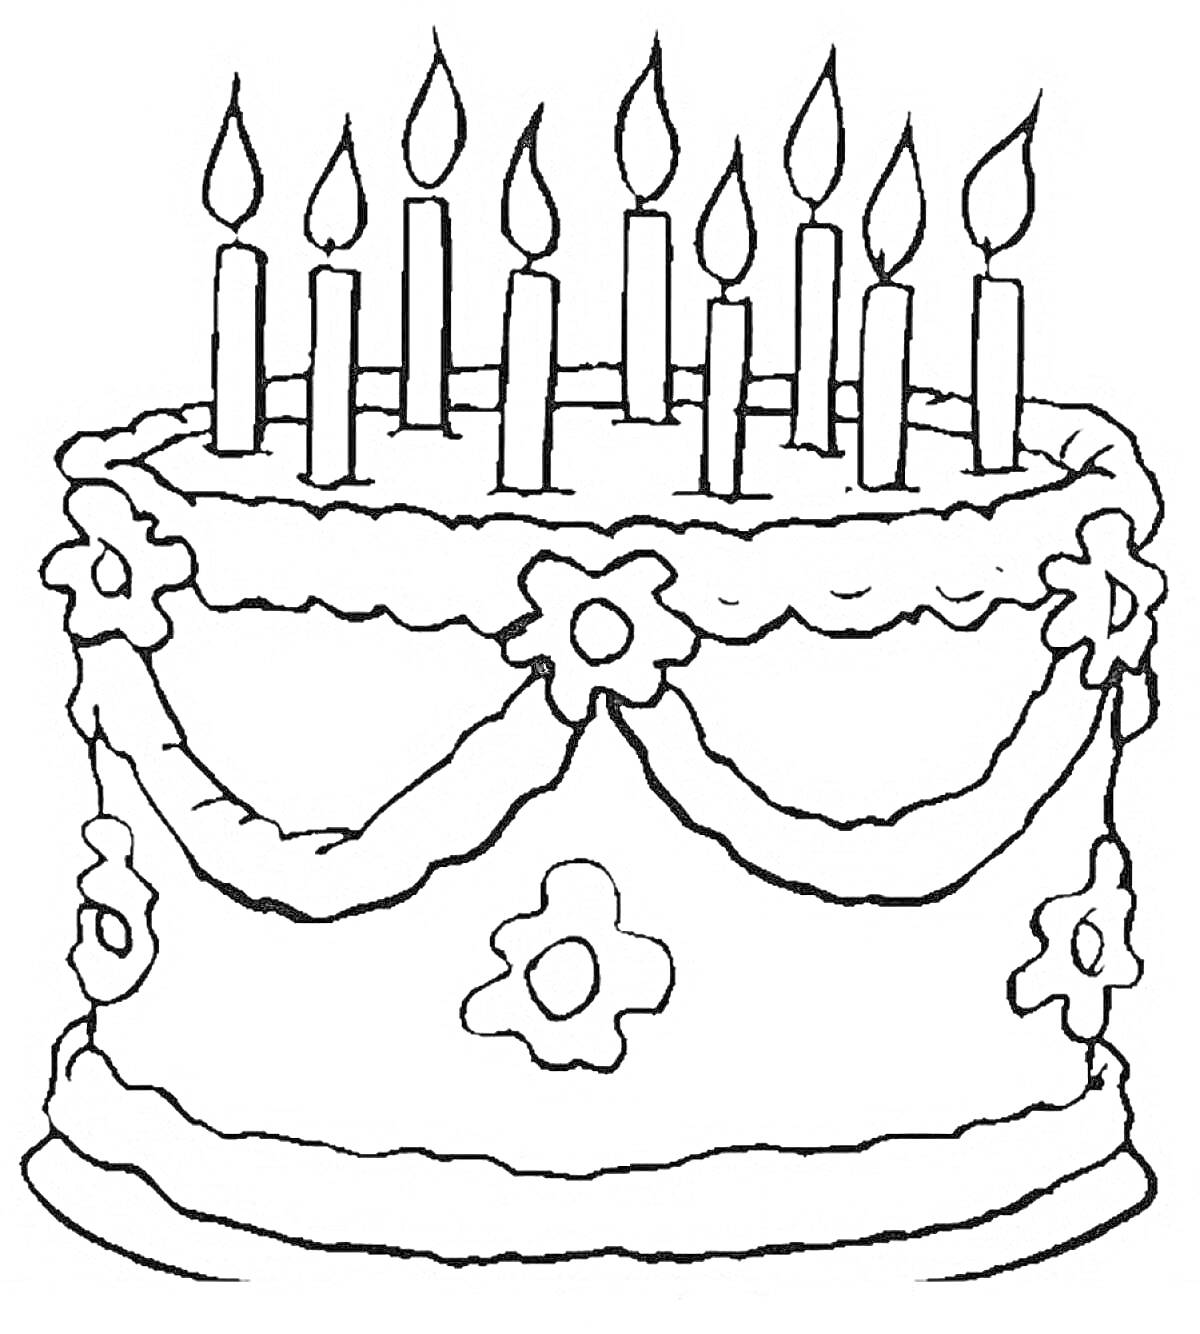 Раскраска торт со свечами, украшенный цветами и лентами